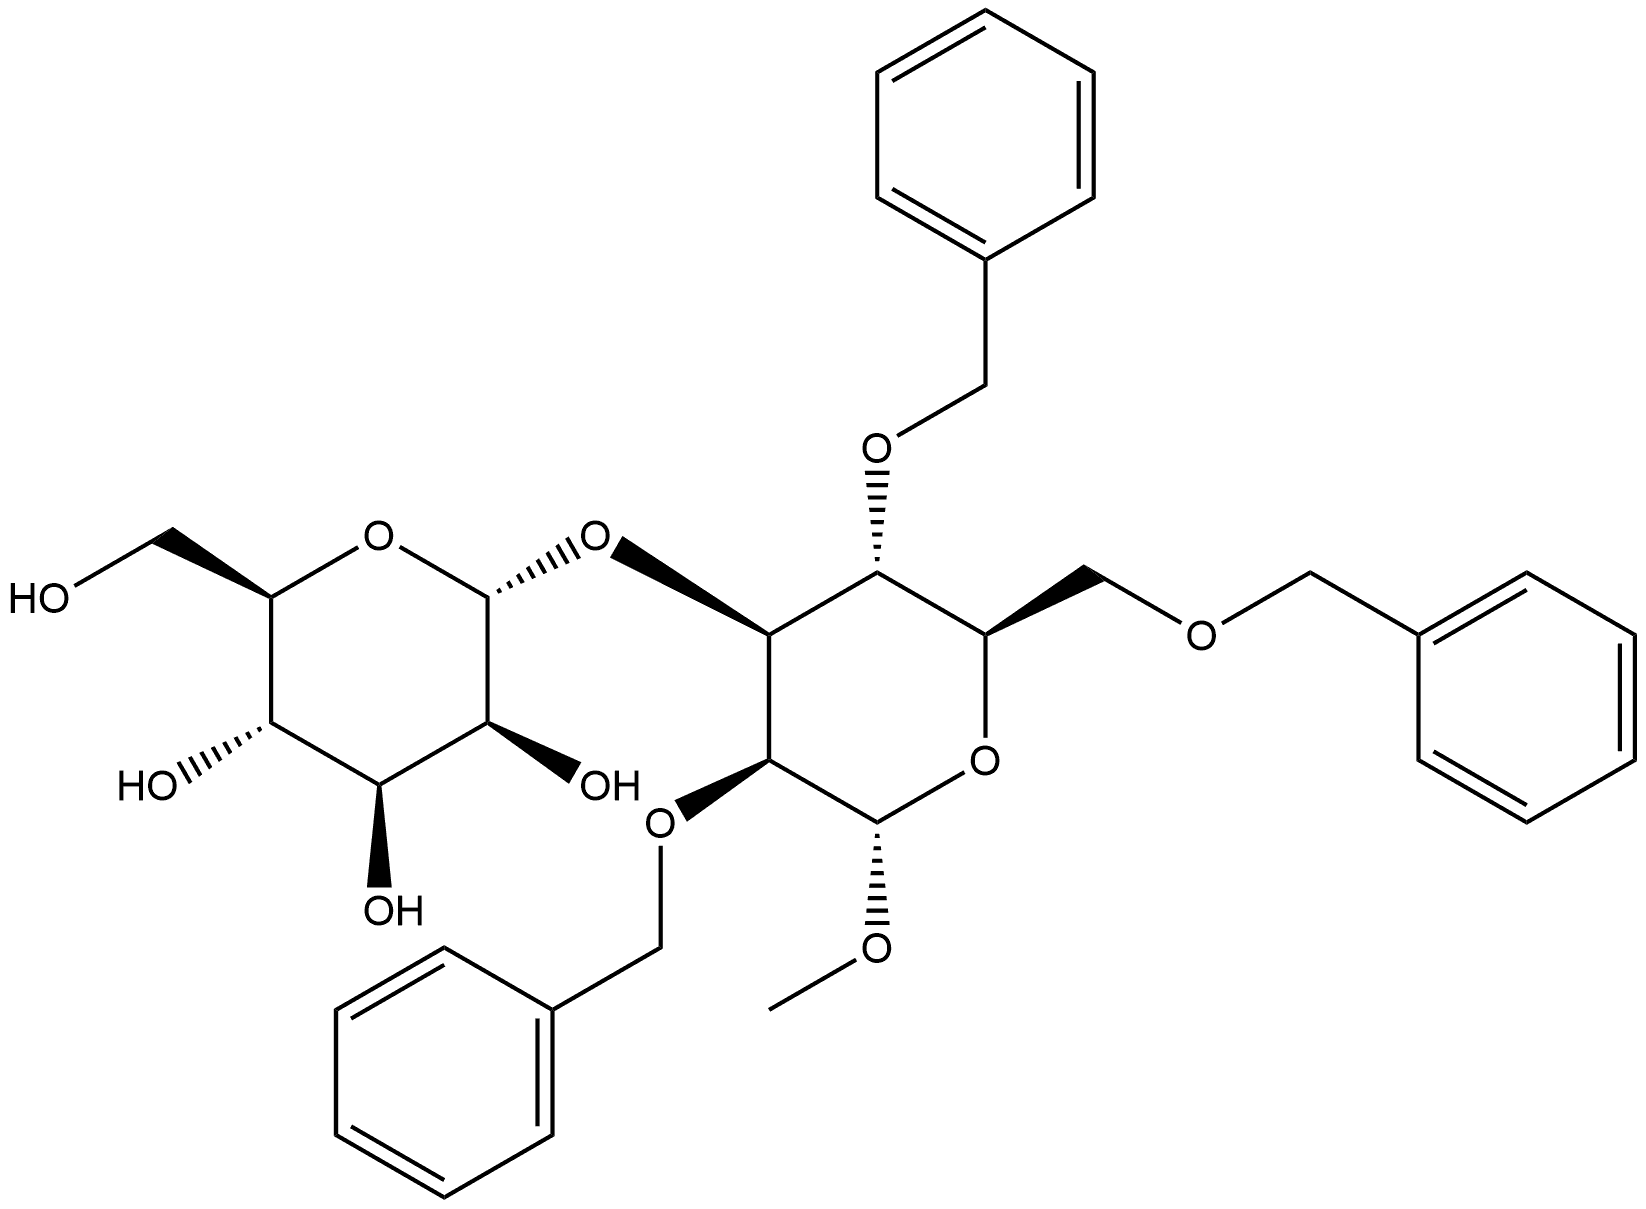 α-D-Mannopyranoside, methyl 3-O-α-D-mannopyranosyl-2,4,6-tris-O-(phenylmethyl)-